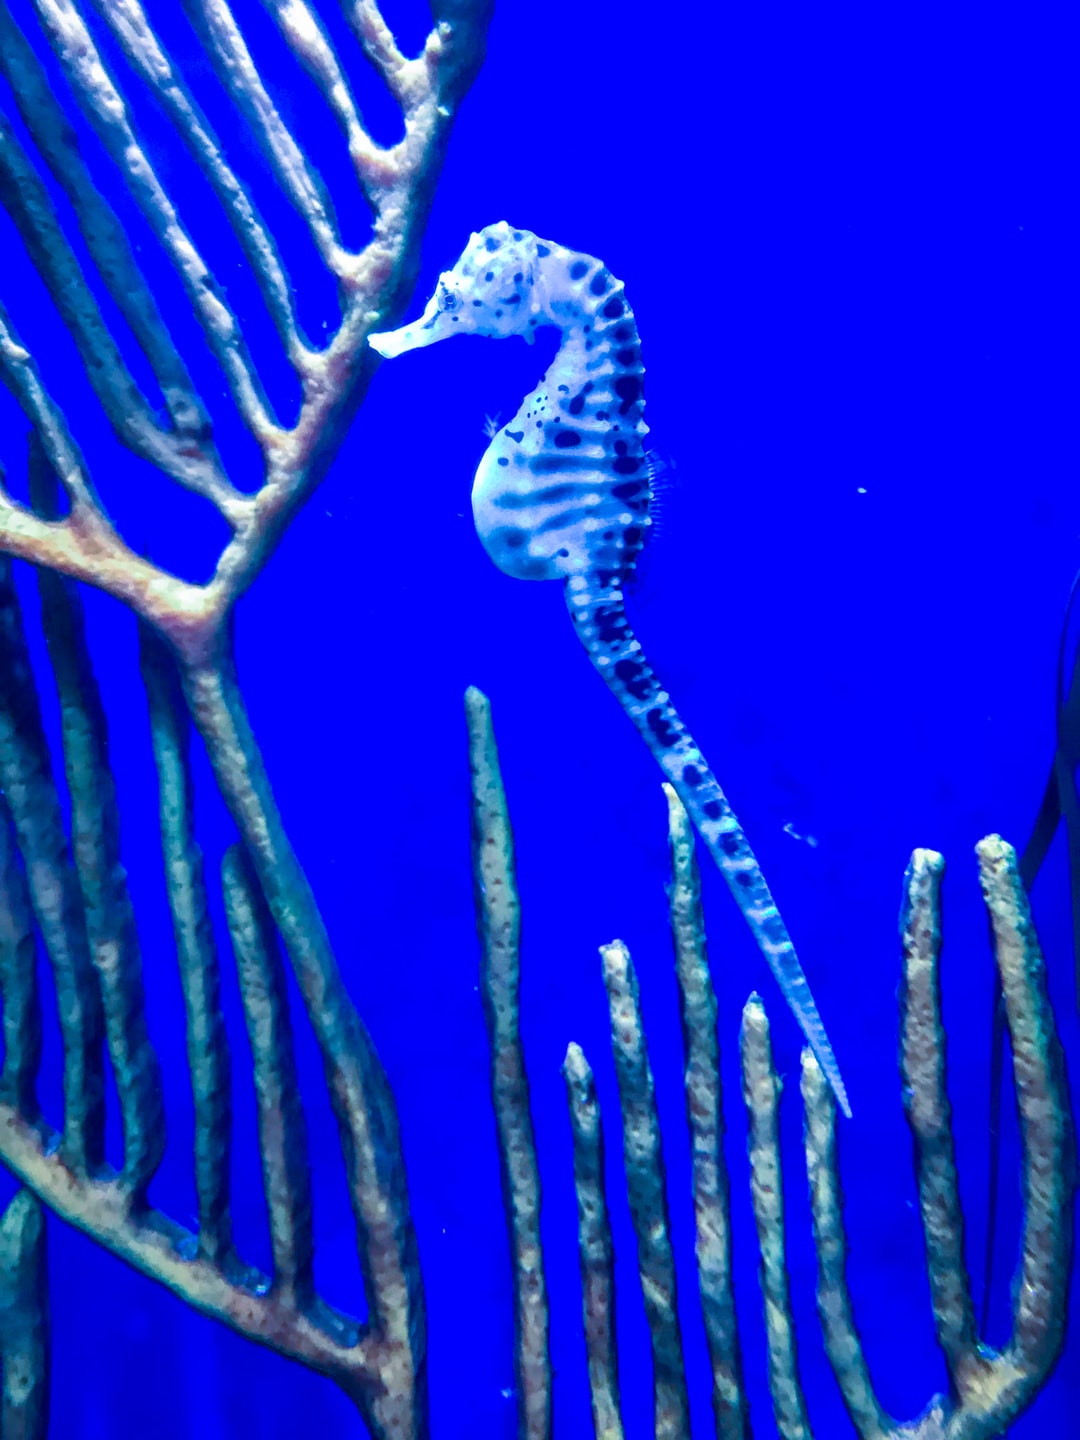 23 wichtige Fragen zu Eheim Aquarium 350 Liter